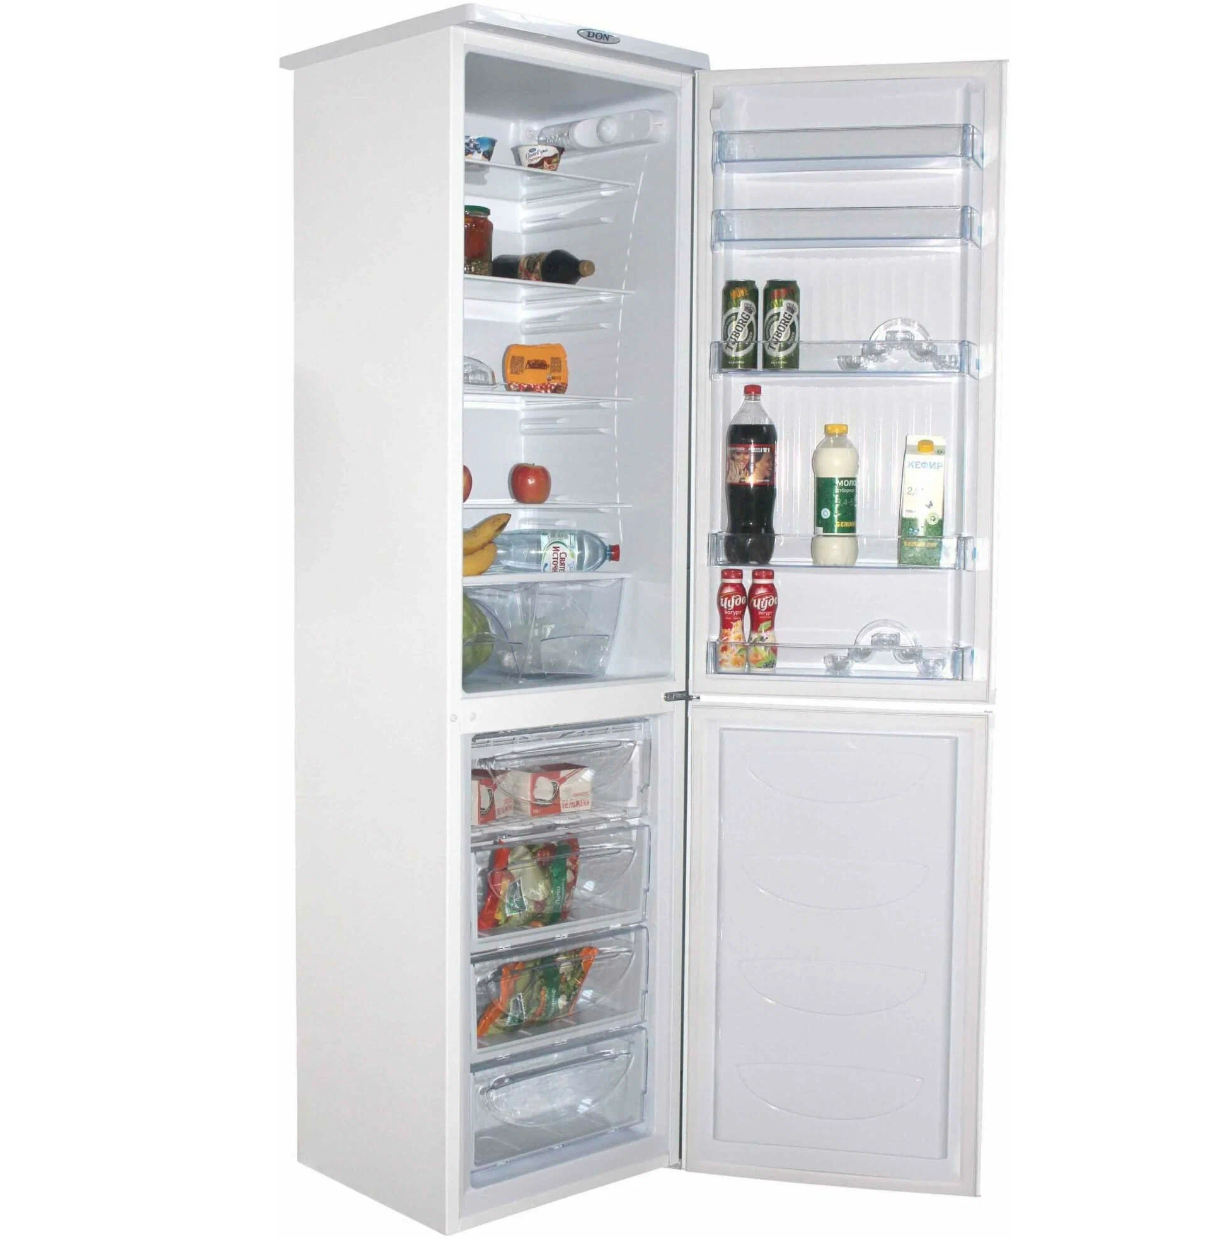 Холодильник Don - фото №12